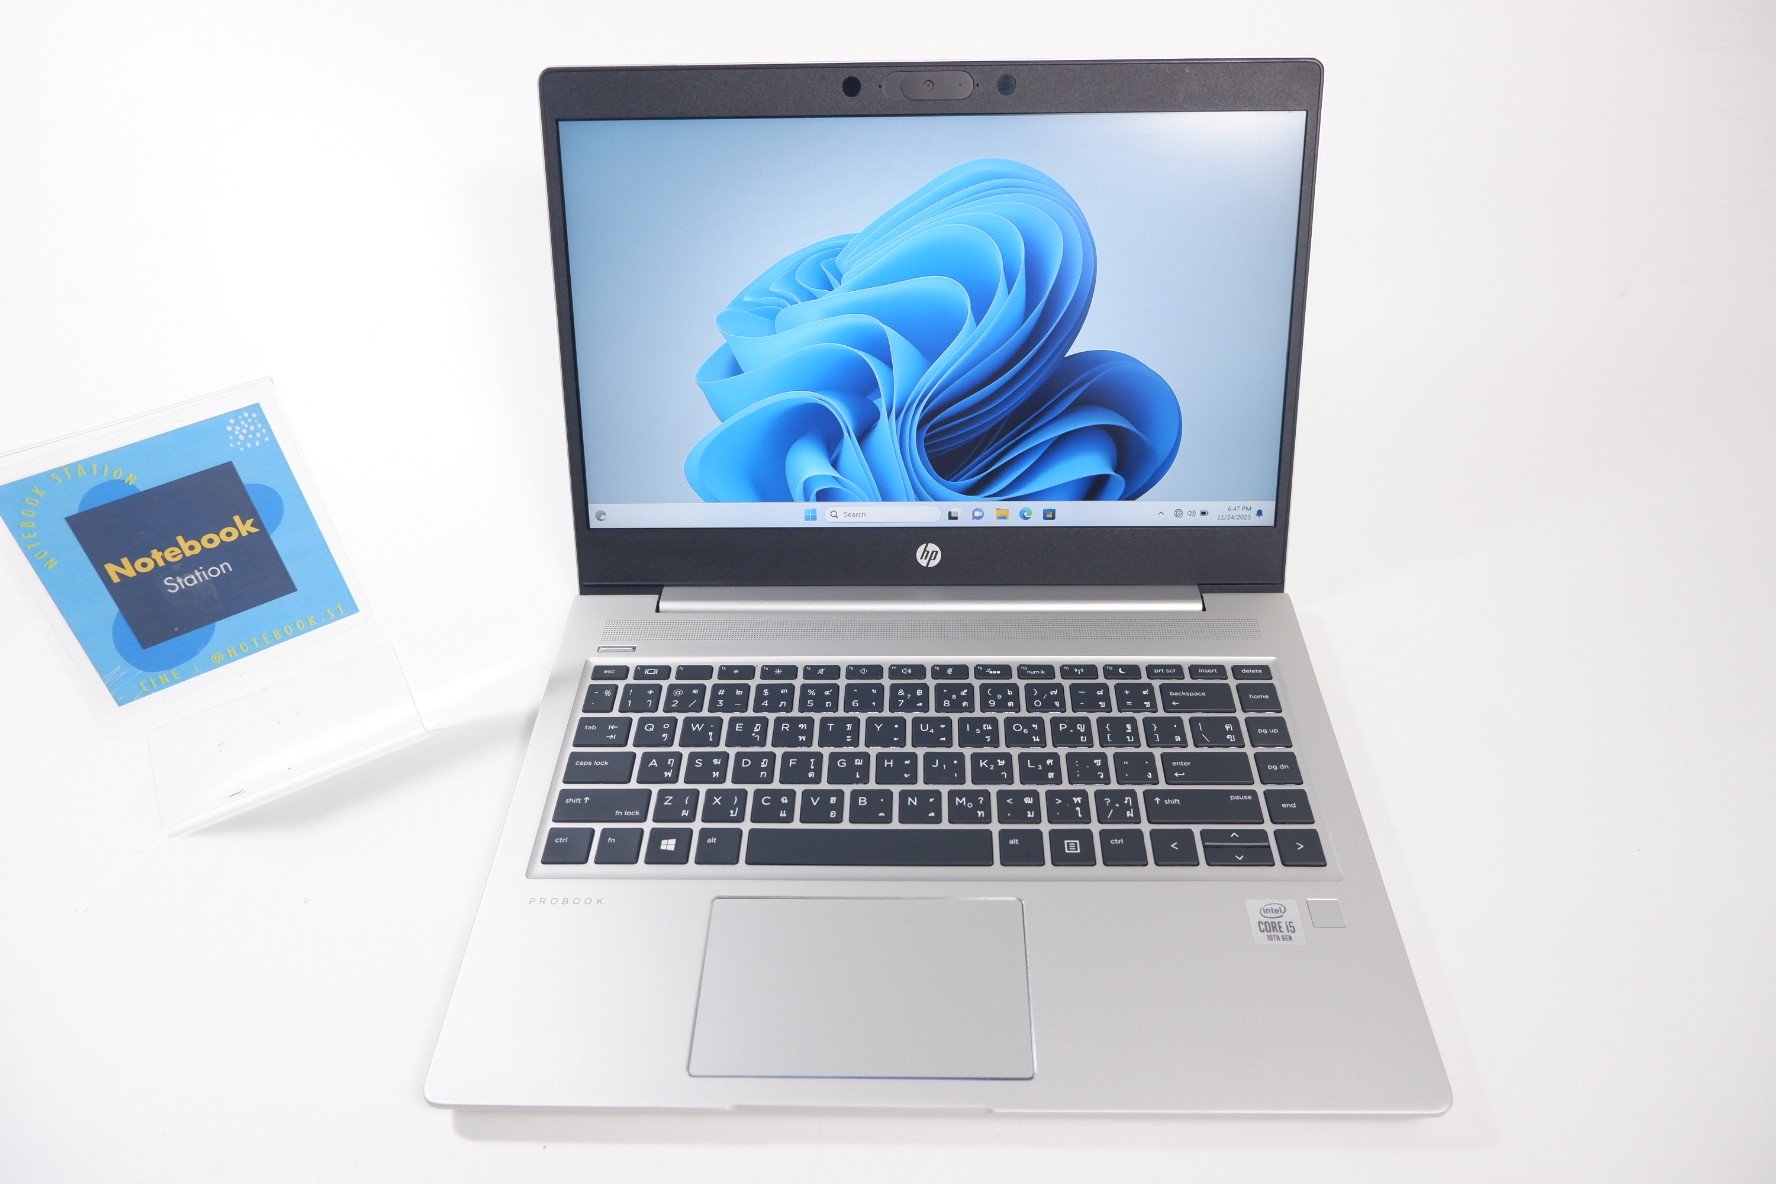 HP ProBook430 G5 i5-8250U Ram8 SSD512 จอ14 HD สเปคดี เครื่องสวย น้ำหนักเบา พร้อมใช้งาน ขายเพียง 8,990.- ฟรีกระเป๋าเป้